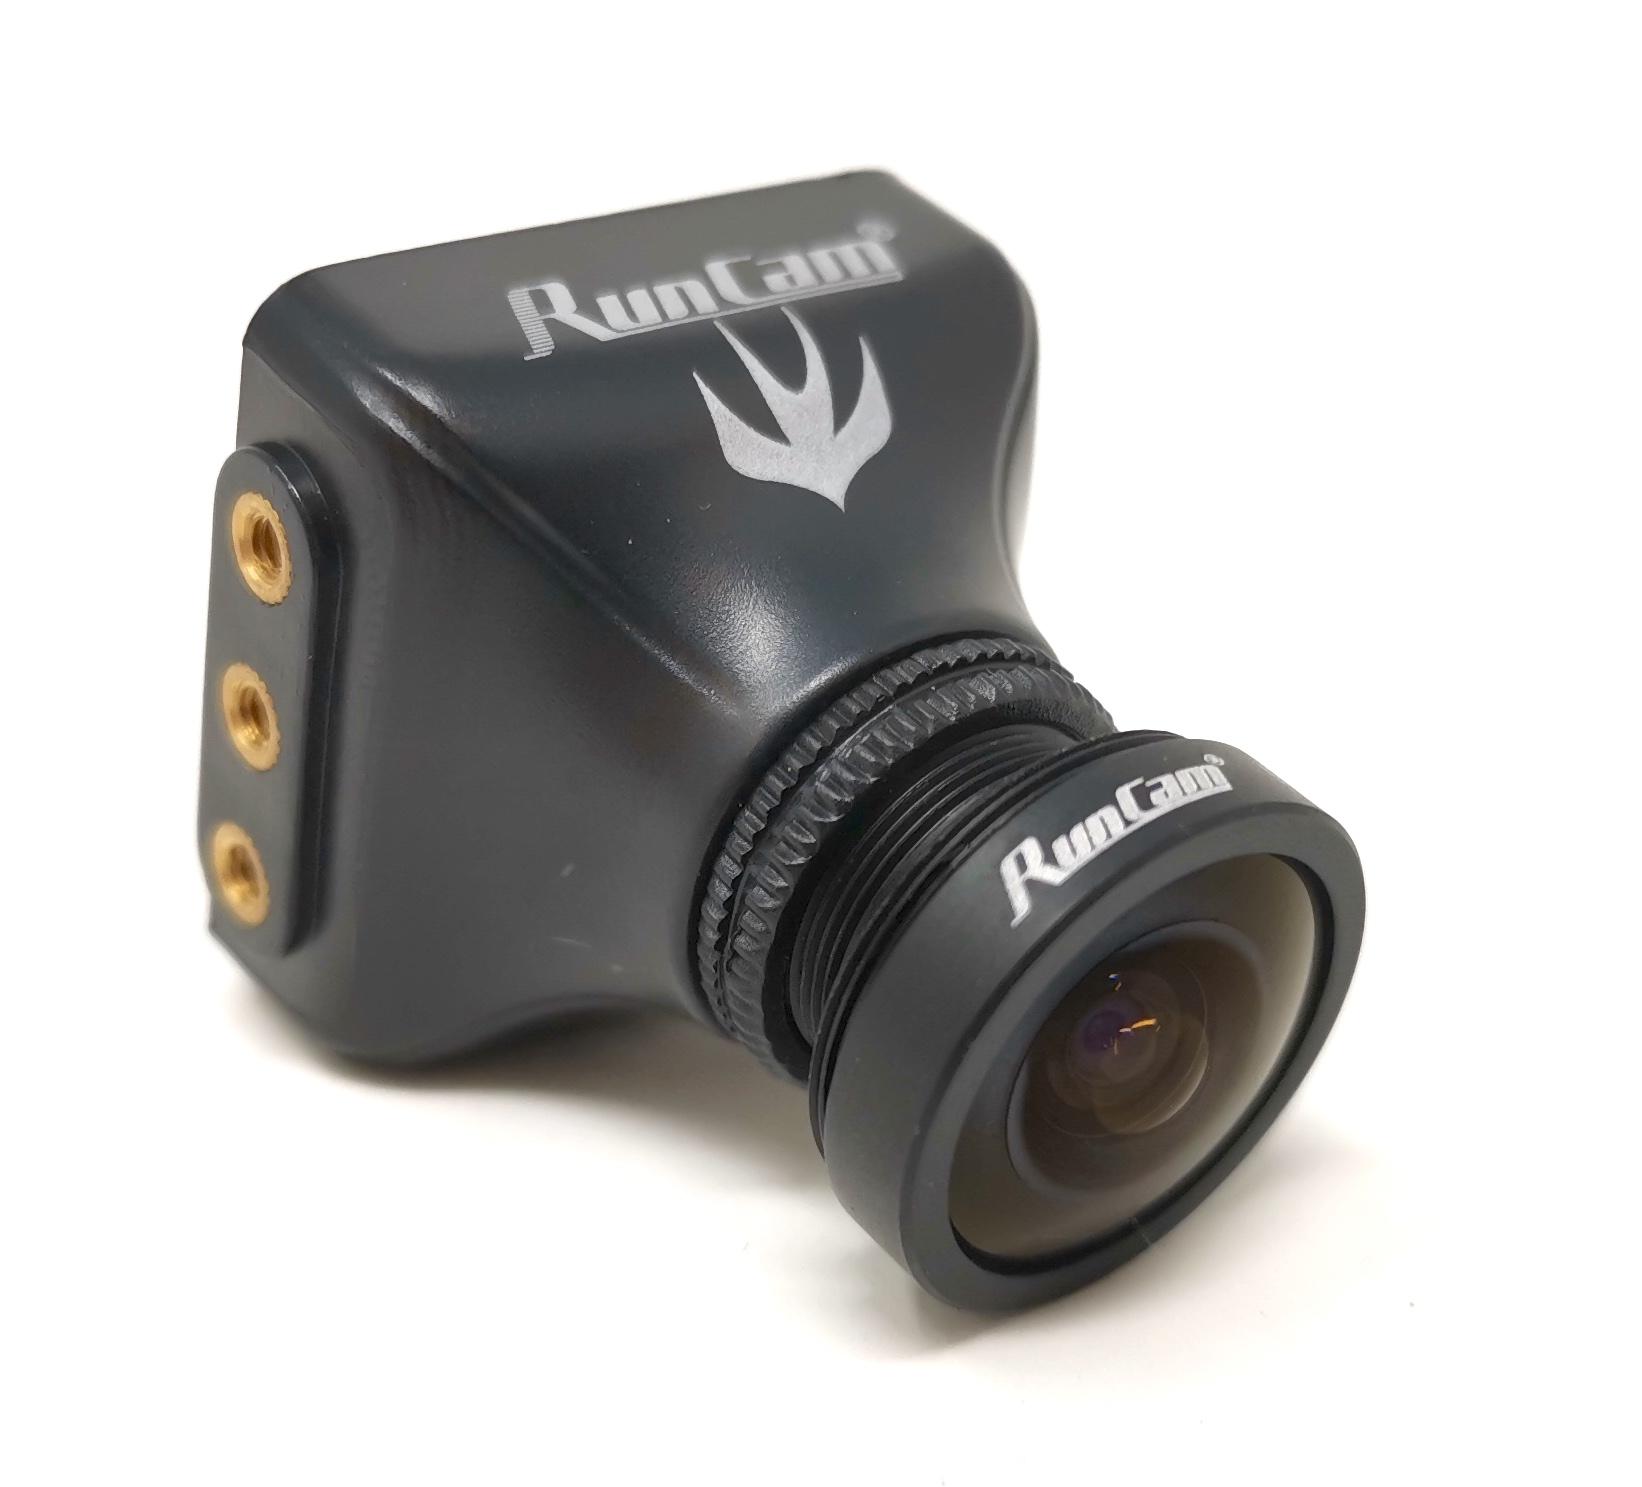 rotor riot special edition Runcam Swift 2 Fpv camera